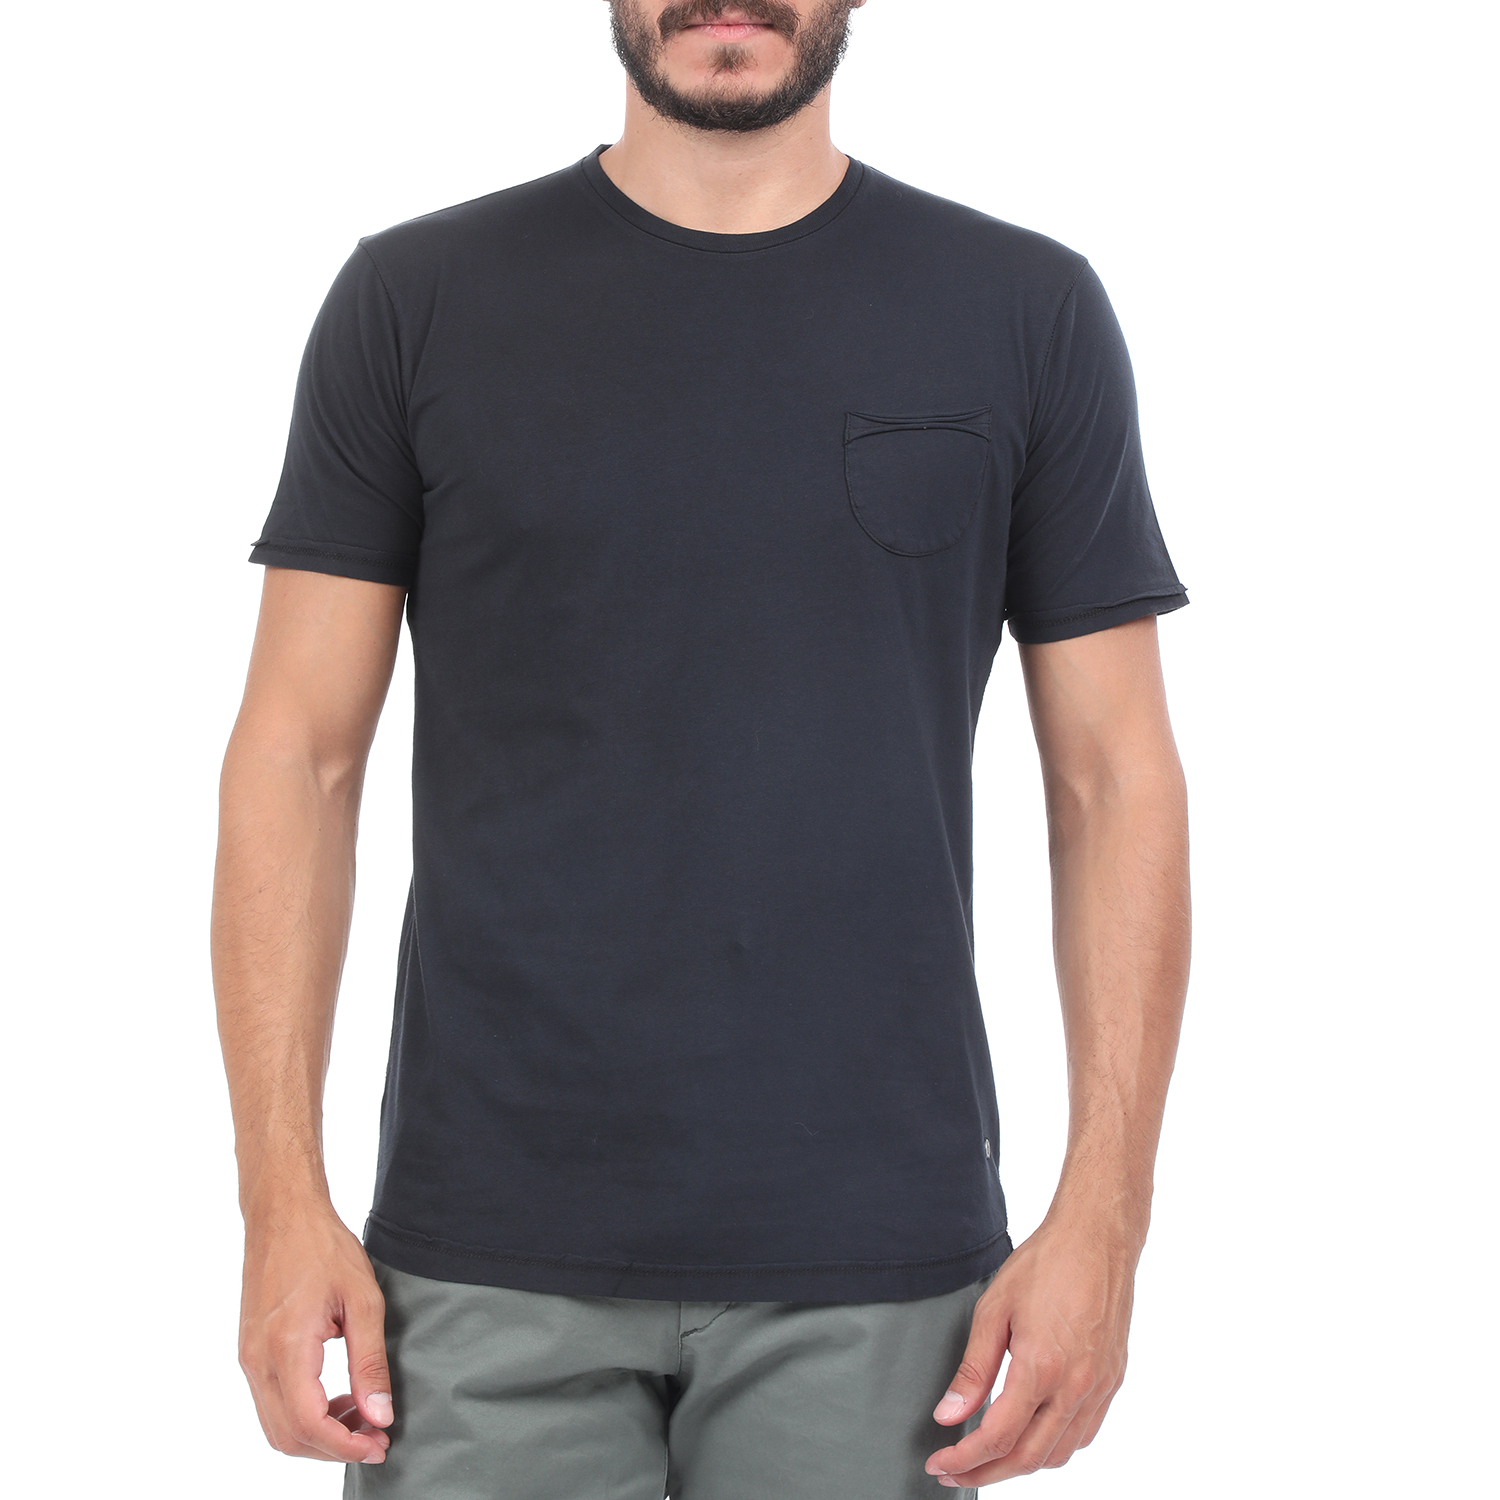 Ανδρικά/Ρούχα/Μπλούζες/Κοντομάνικες BATTERY - Ανδρική μπλούζα BATTERY SOLID 3 GARMENT DYΕ μαύρη